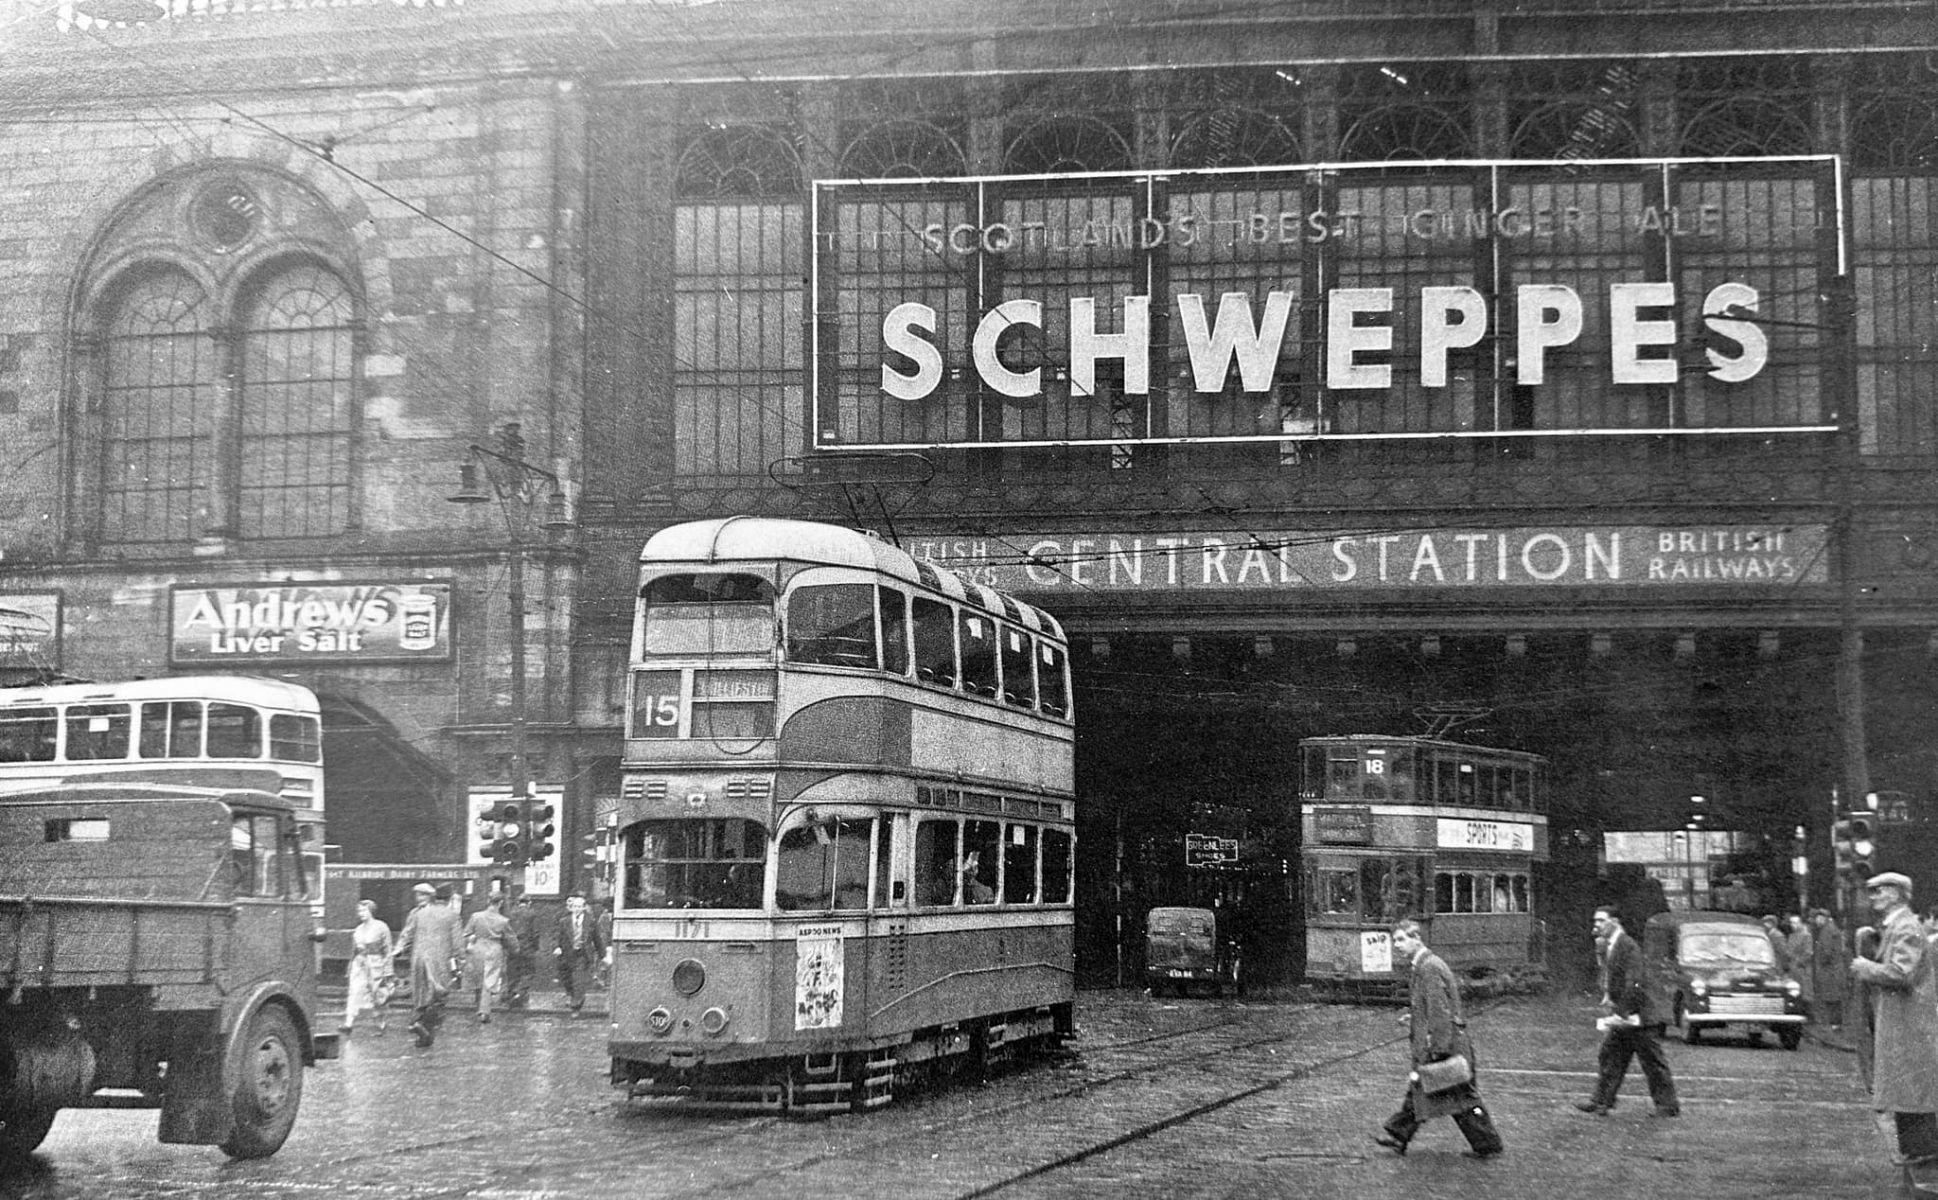 Glasgow: Then - Central Station Bridge in Argyll Street in 1955